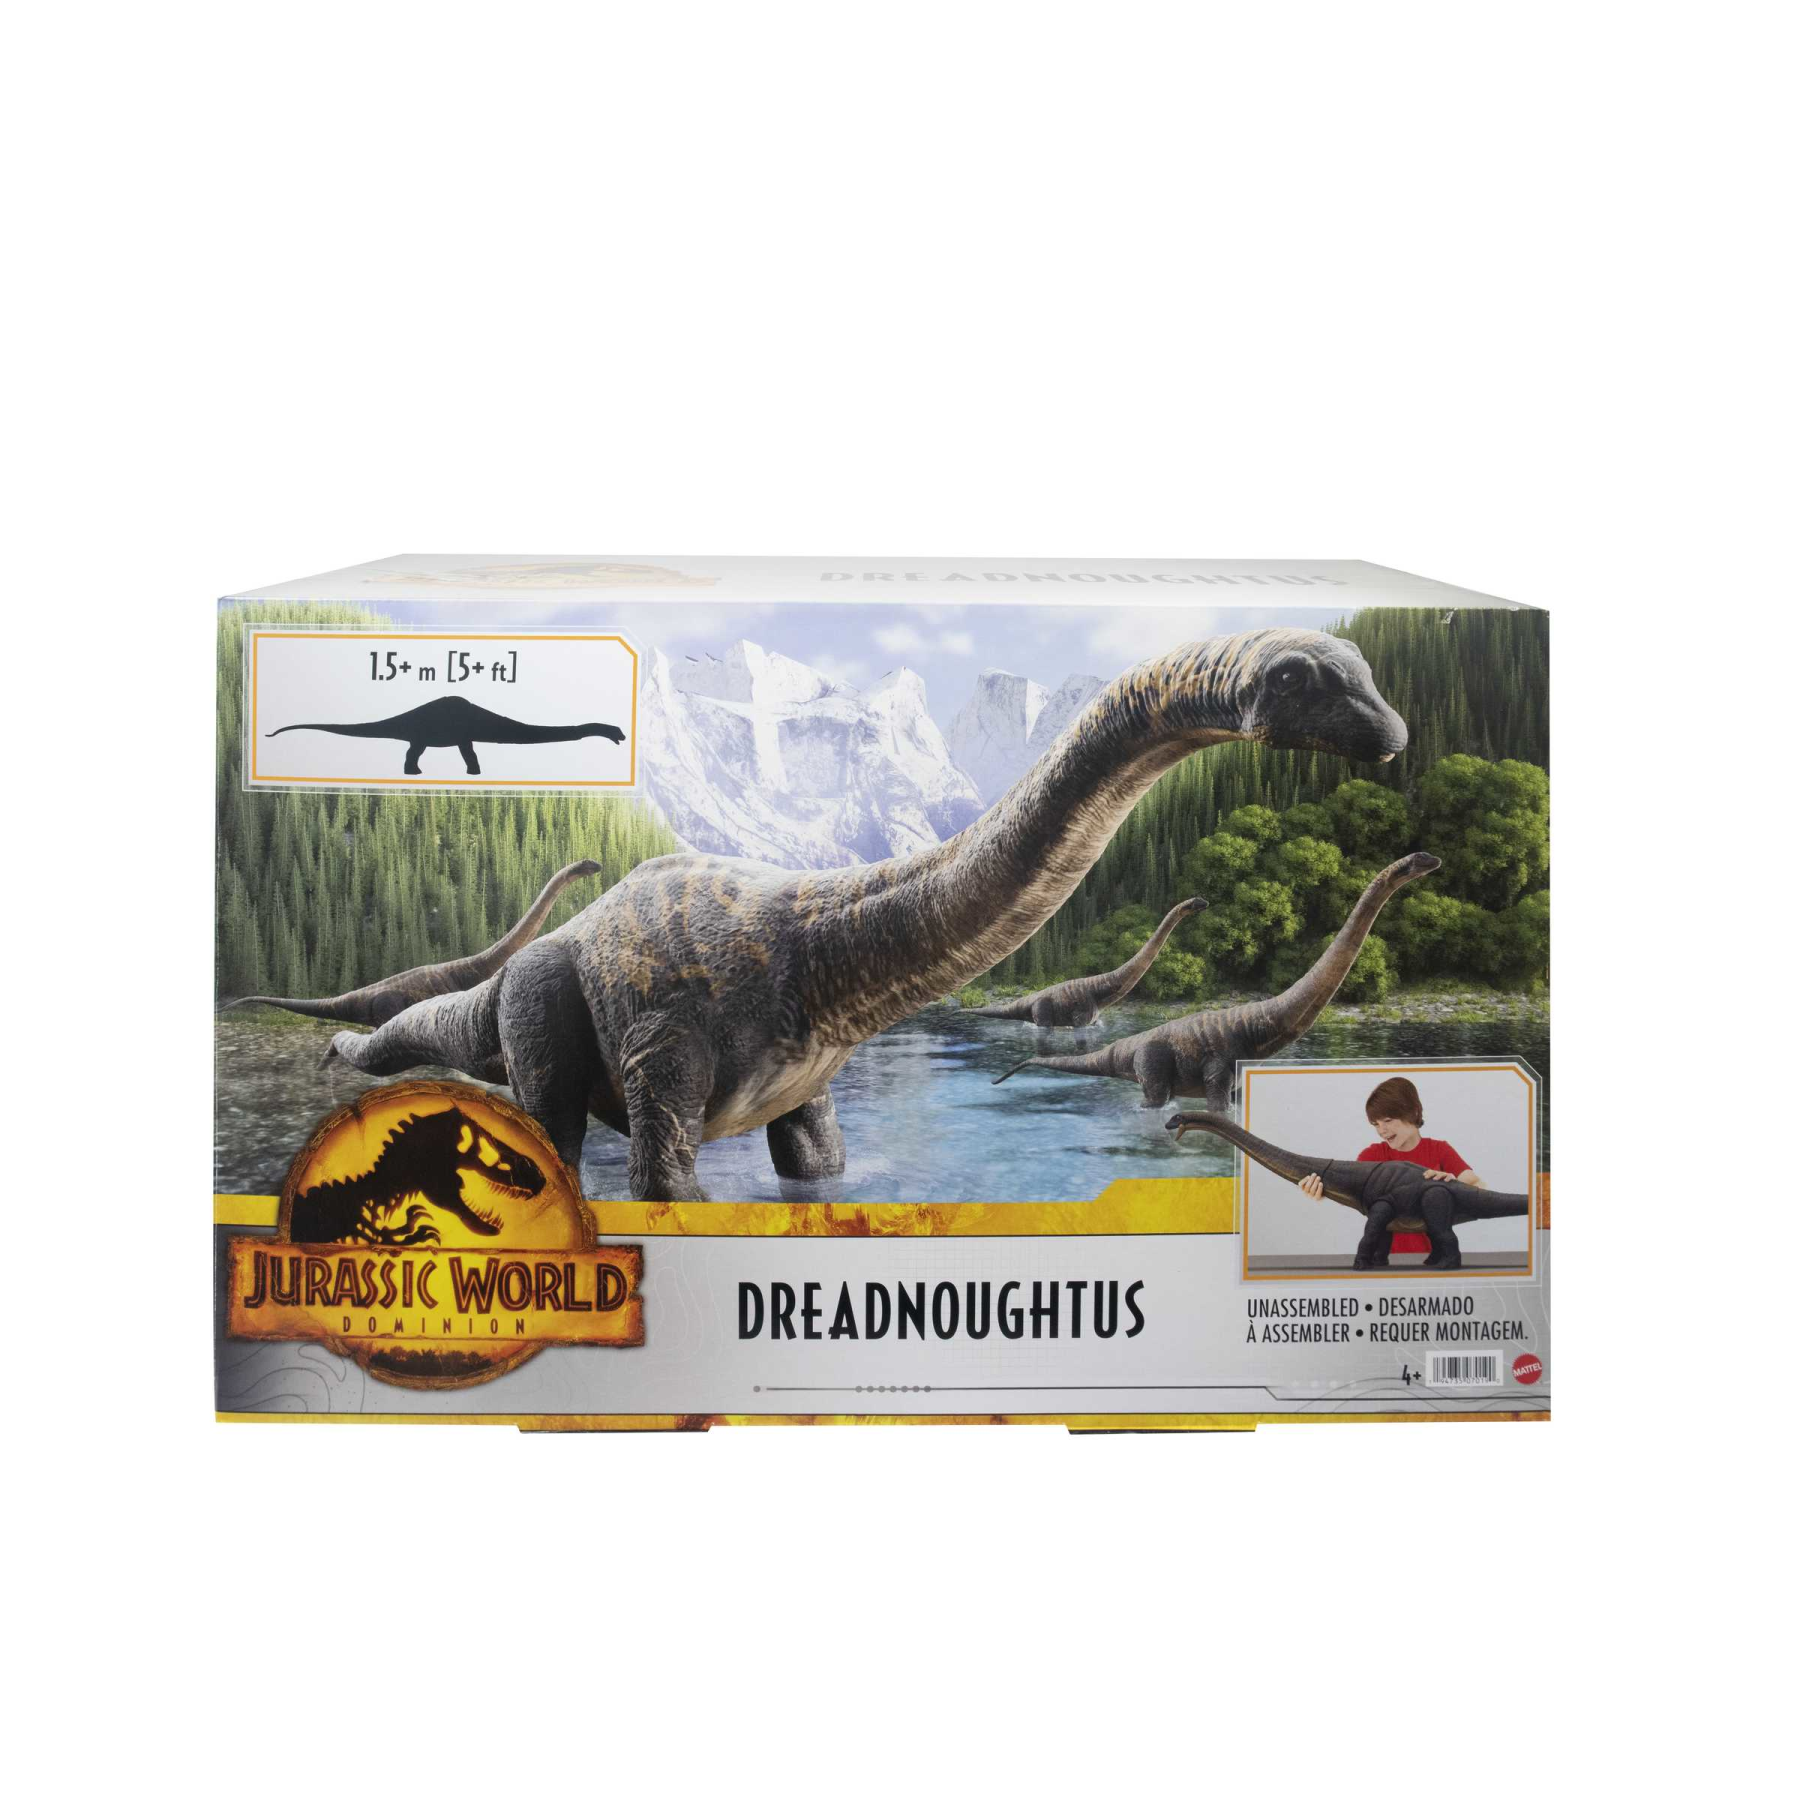 Jurassic world - dreadnotus dinosauro con collo e coda lunghi, giocattolo per bambini 4+ anni - Jurassic World